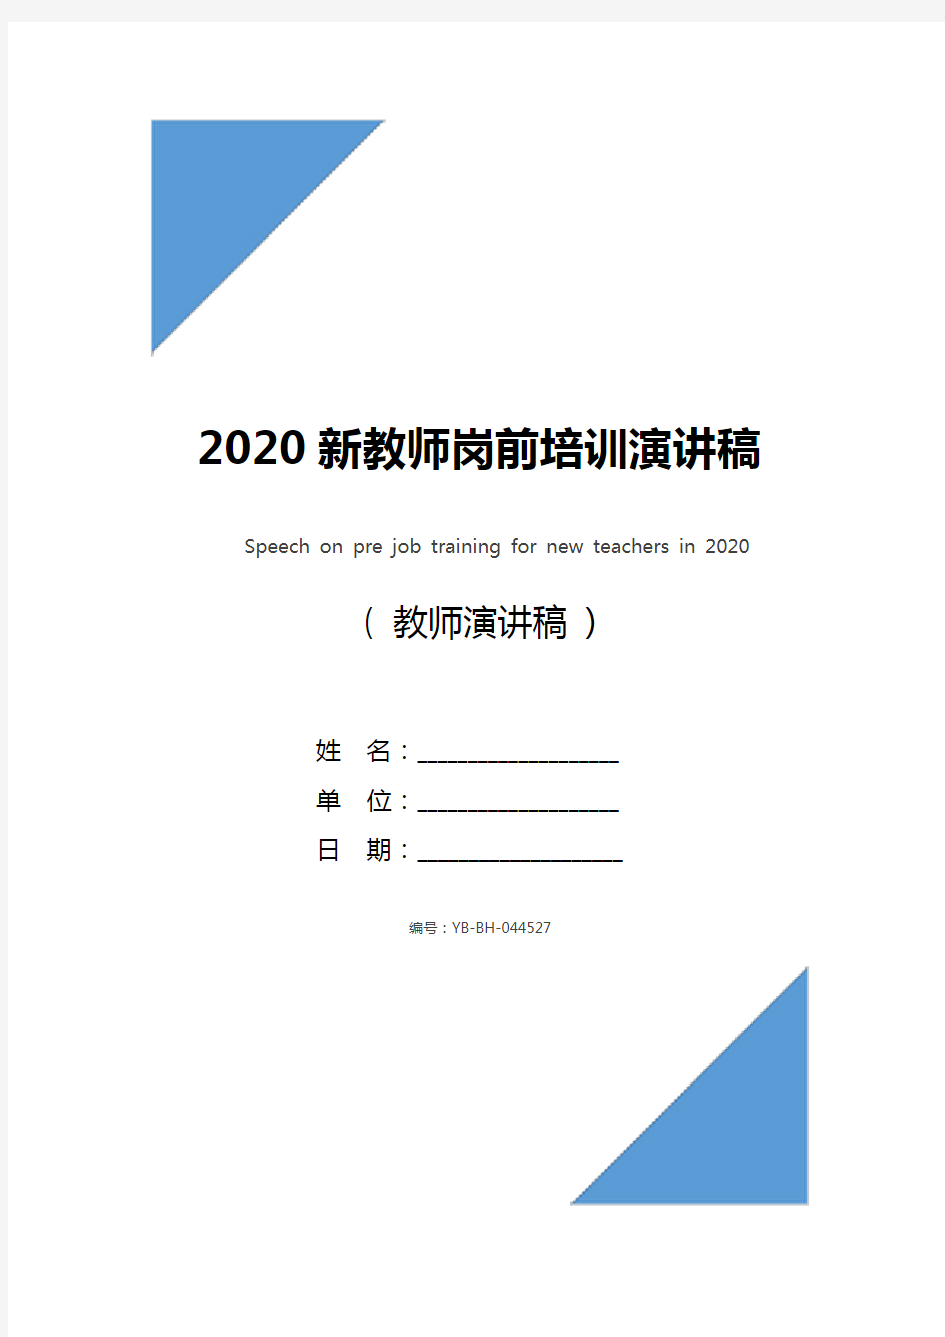 2020新教师岗前培训演讲稿